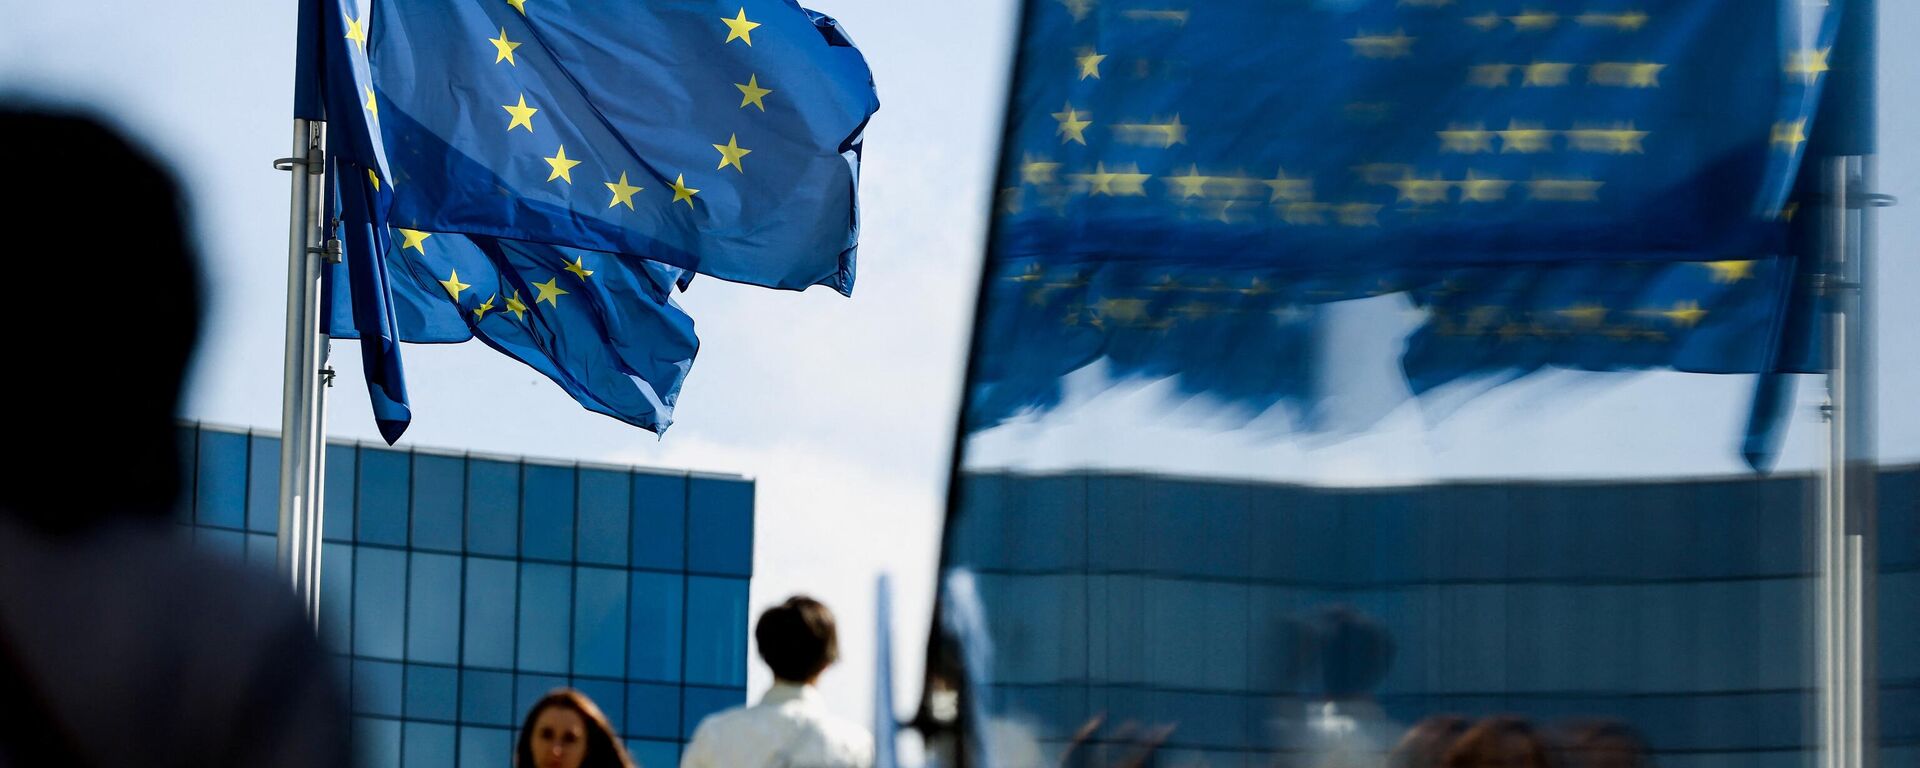 Люди идут перед флагом Евросоюза в районе штаб-квартиры ЕС в Брюсселе 23 сентября 2021 г. - Sputnik Абхазия, 1920, 30.08.2022